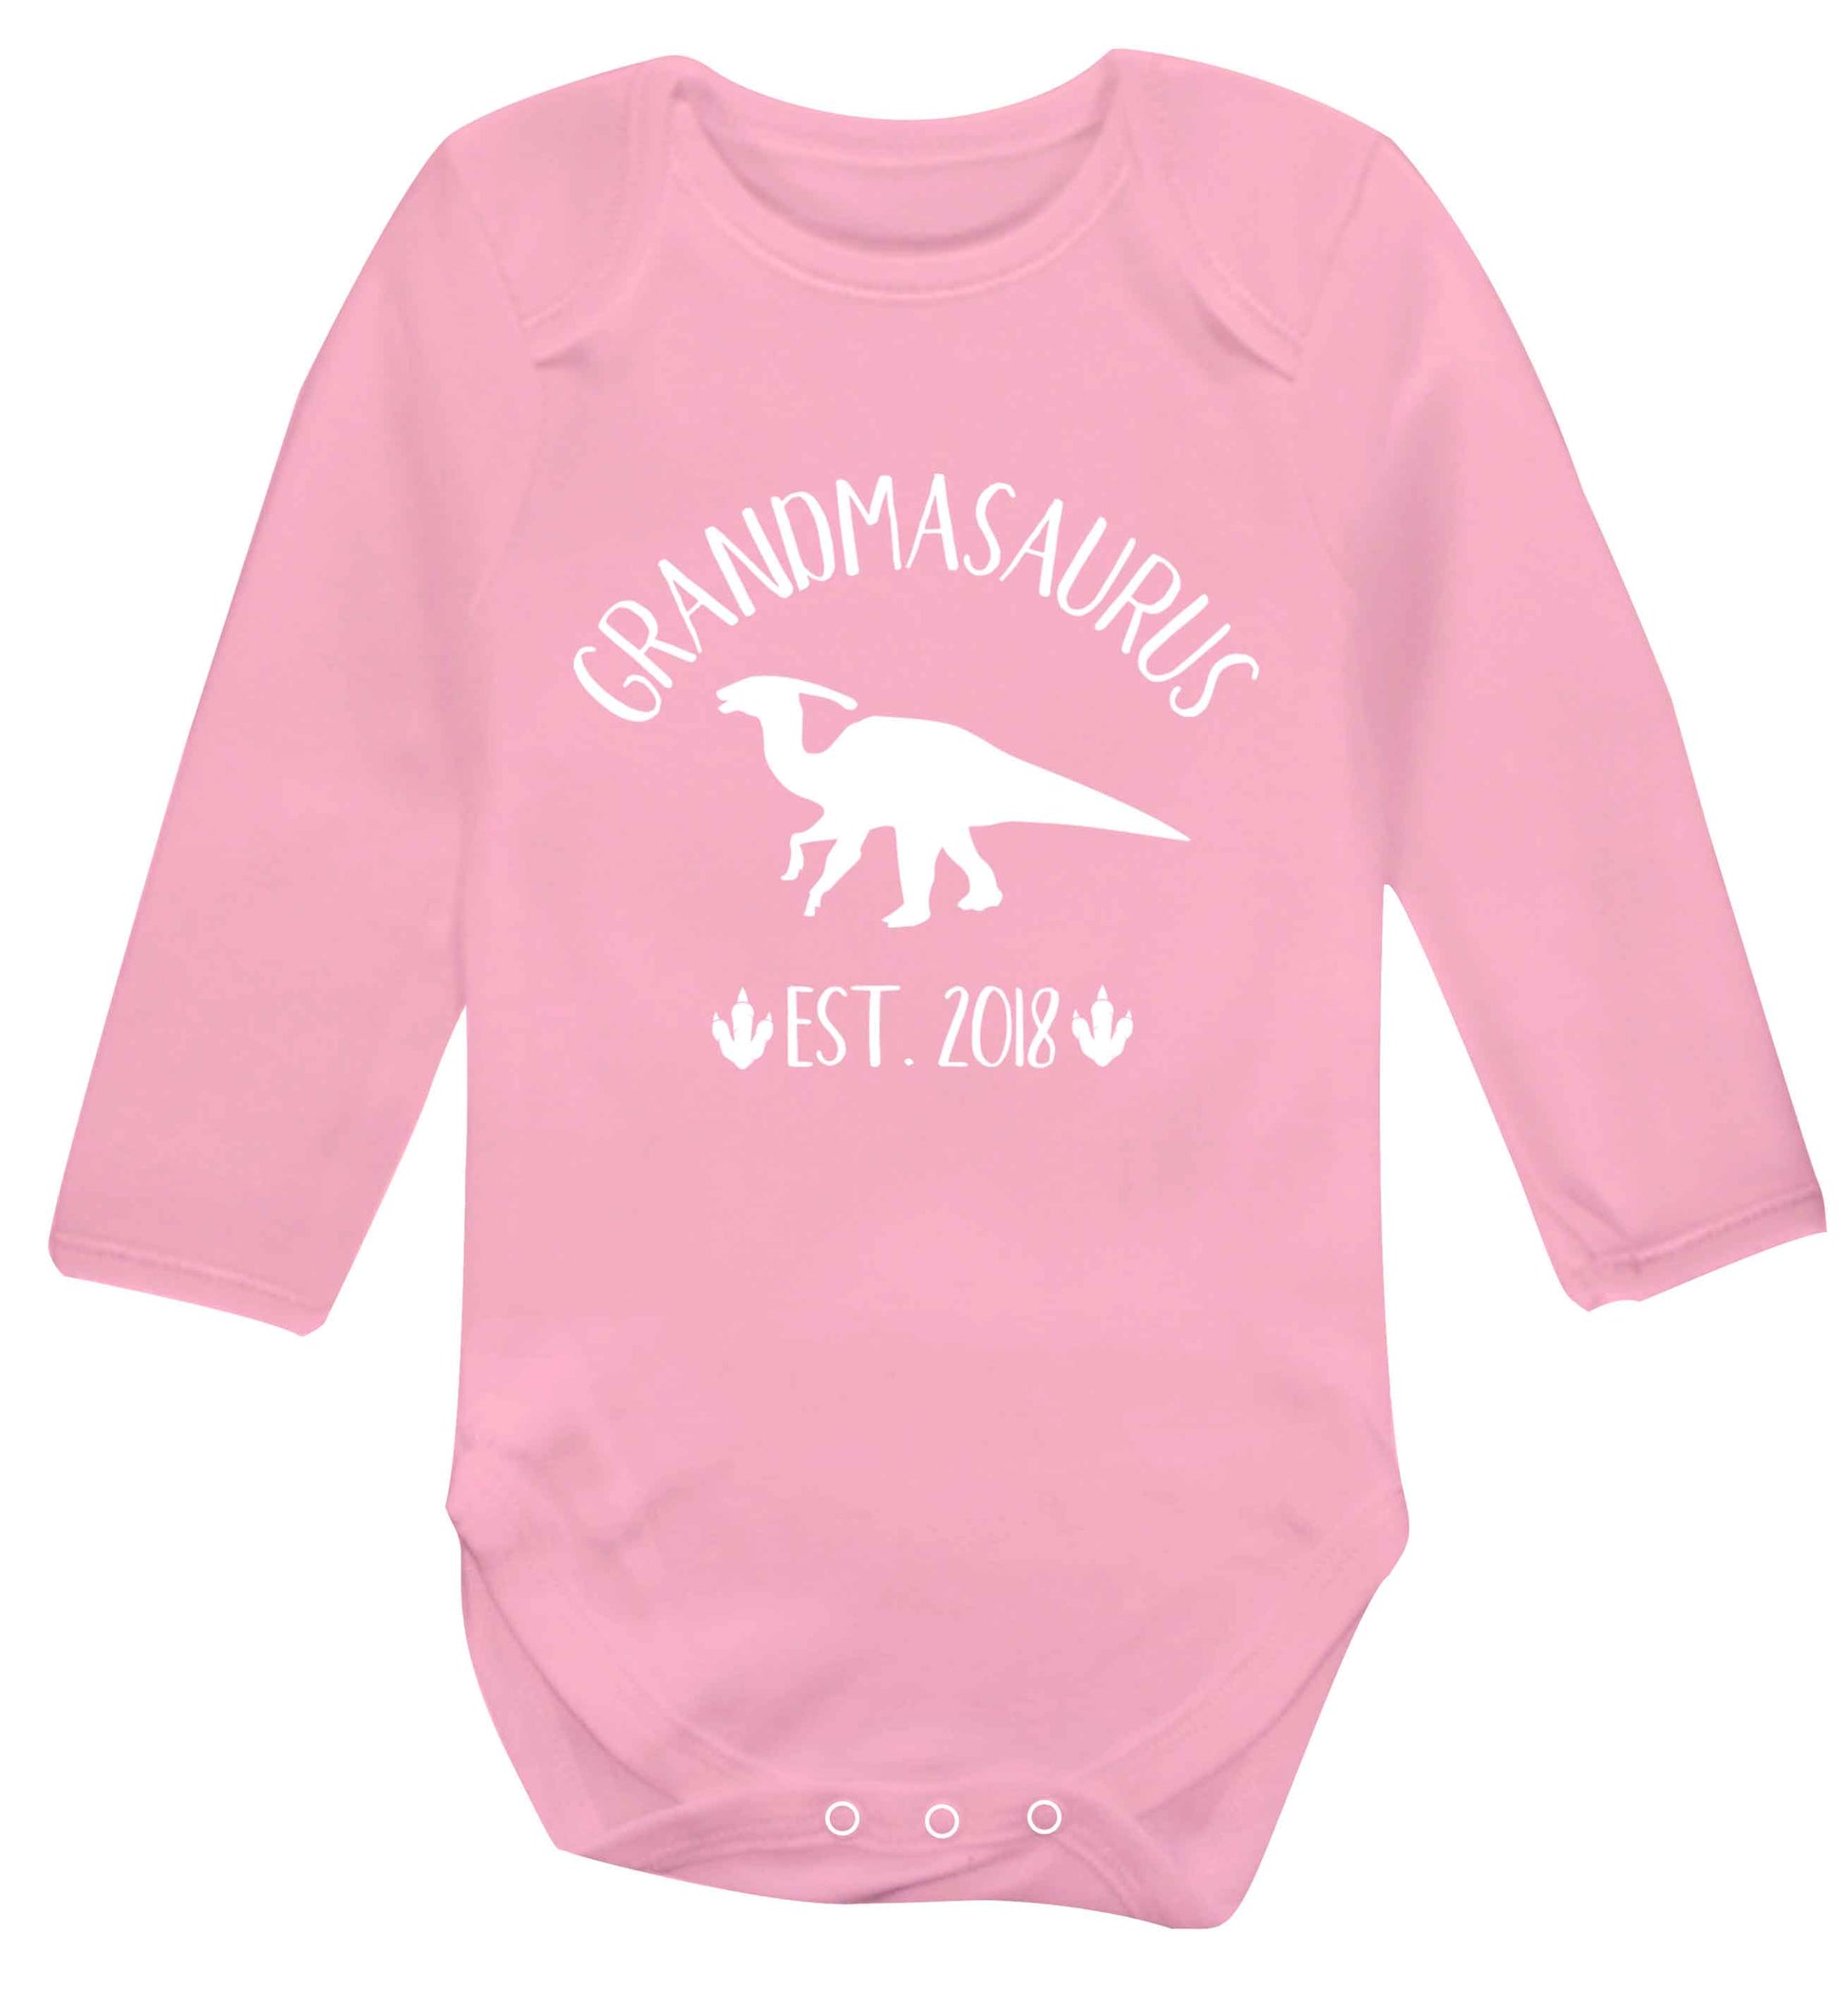 Personalised grandmasaurus since (custom date) Baby Vest long sleeved pale pink 6-12 months